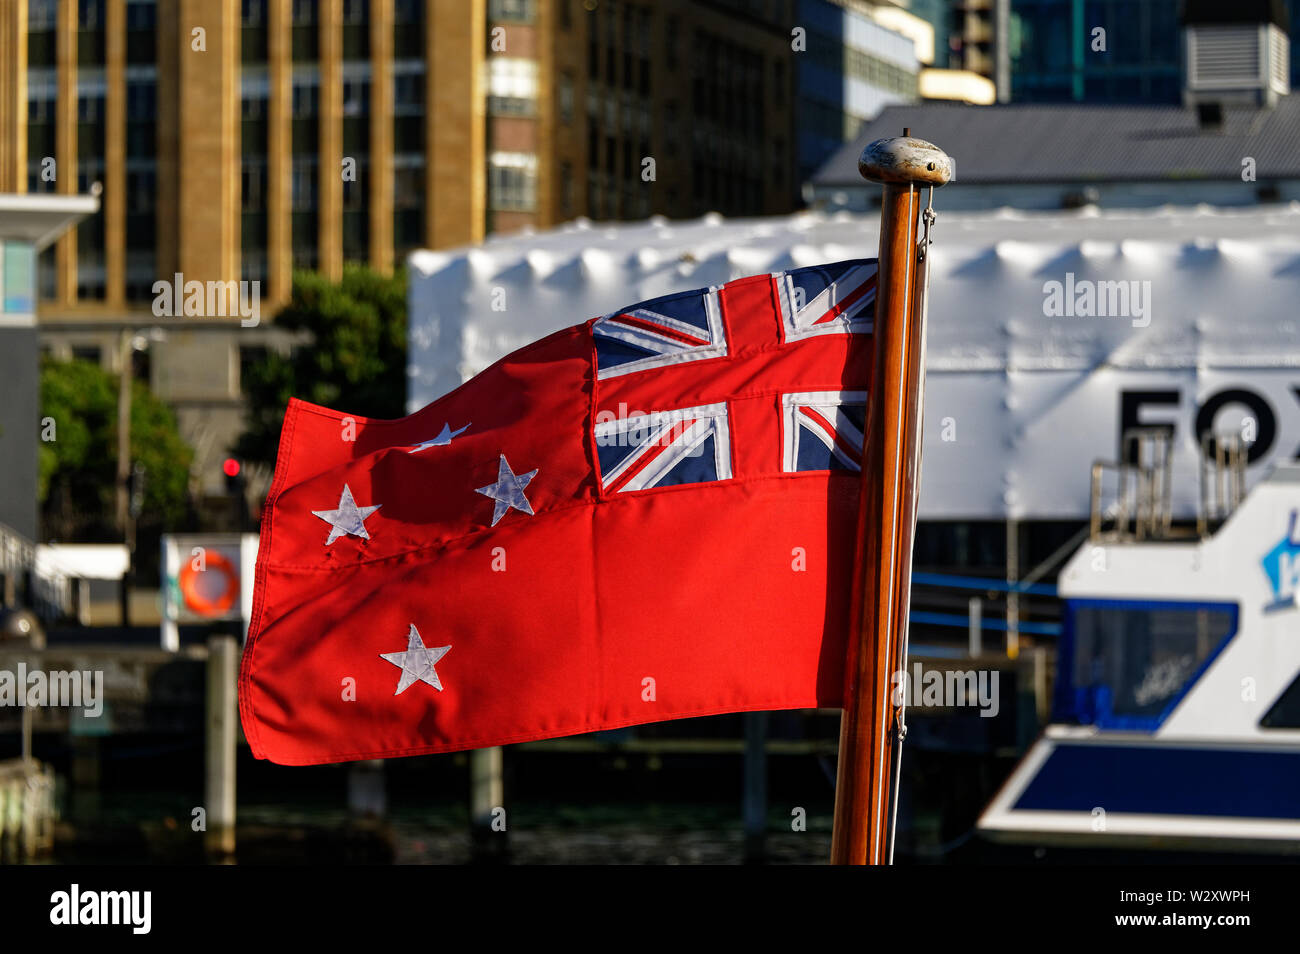 New Zealand's Red Ensign est embarqué sur des bateaux et a été utilisé sur des navires marchands au cours des deux guerres mondiales Banque D'Images